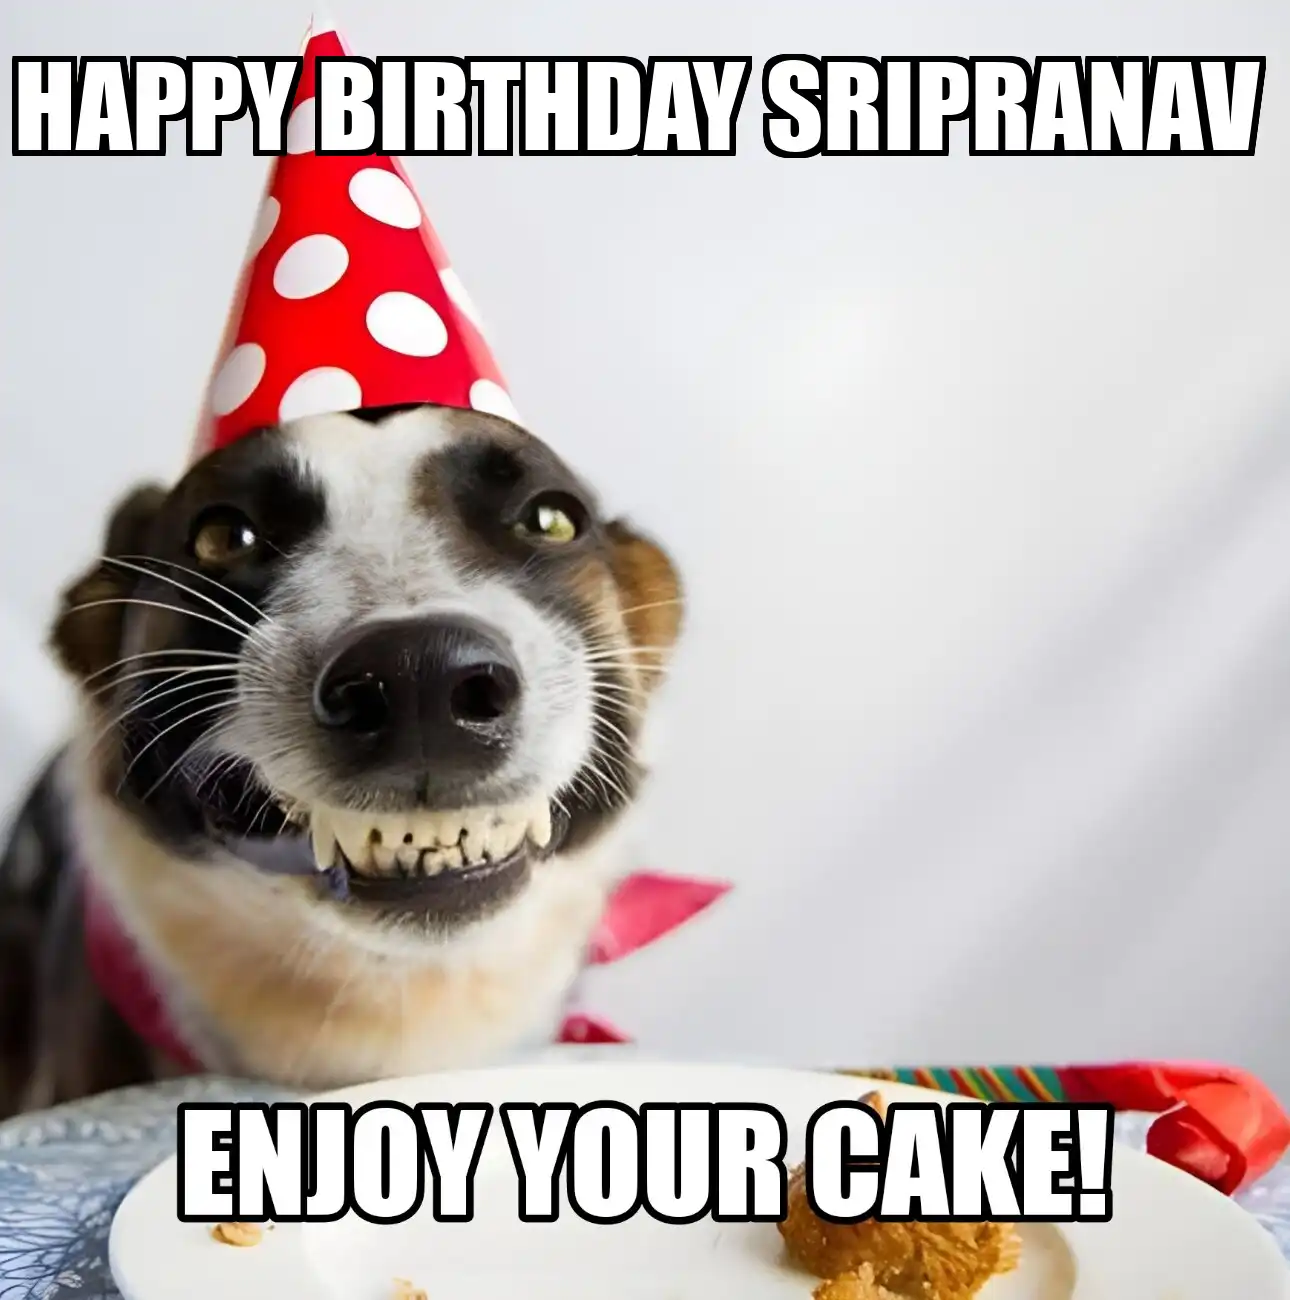 Happy Birthday Sripranav Enjoy Your Cake Dog Meme